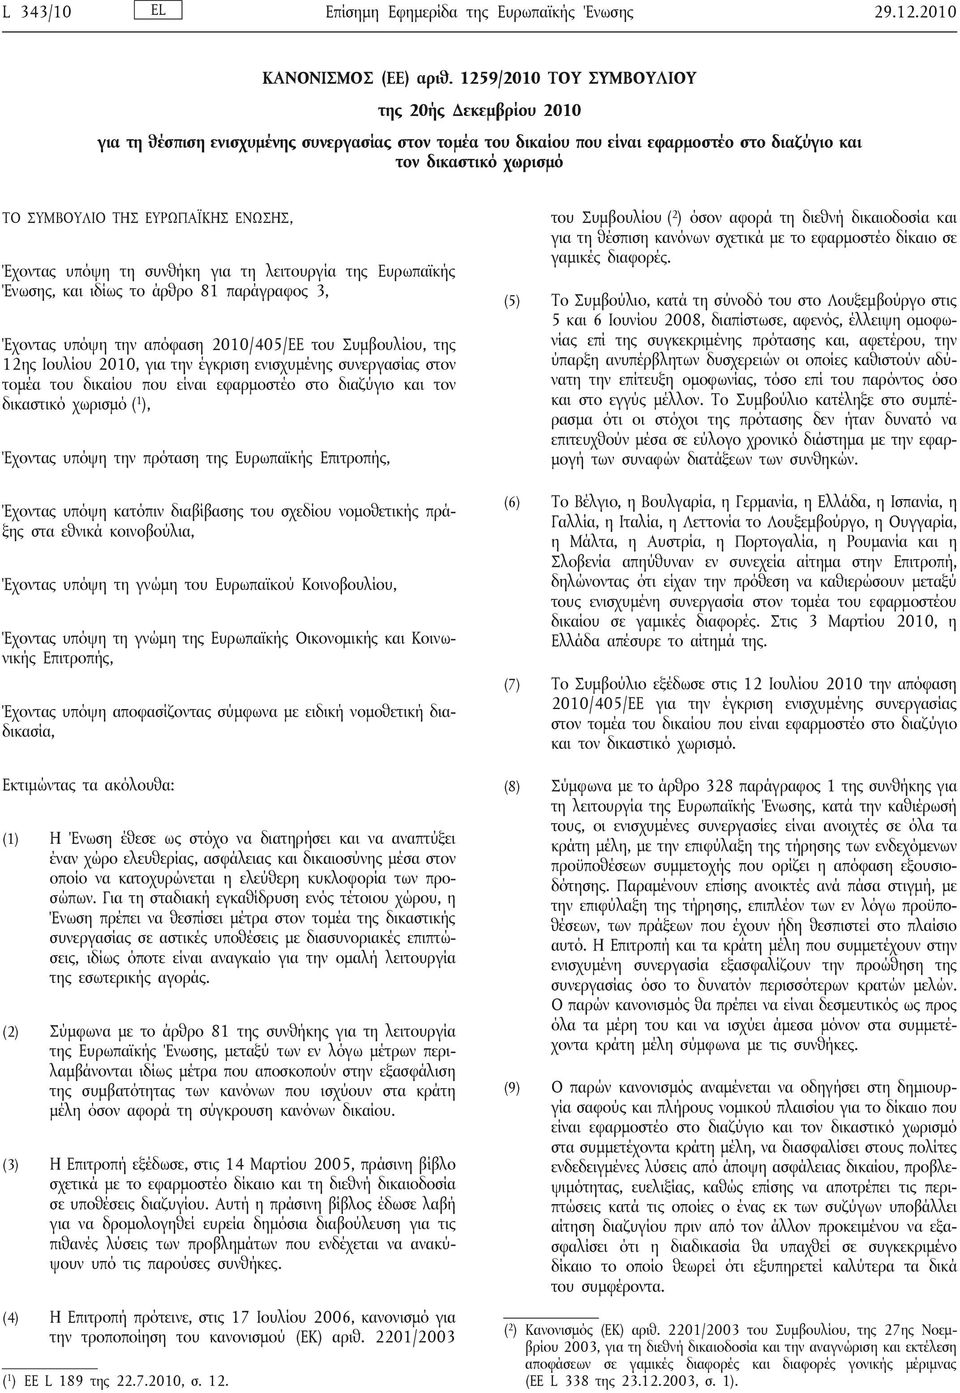 ΕΝΩΣΗΣ, Έχοντας υπόψη τη συνθήκη για τη λειτουργία της Ευρωπαϊκής Ένωσης, και ιδίως το άρθρο 81 παράγραφος 3, Έχοντας υπόψη την απόφαση 2010/405/ΕΕ του Συμβουλίου, της 12ης Ιουλίου 2010, για την